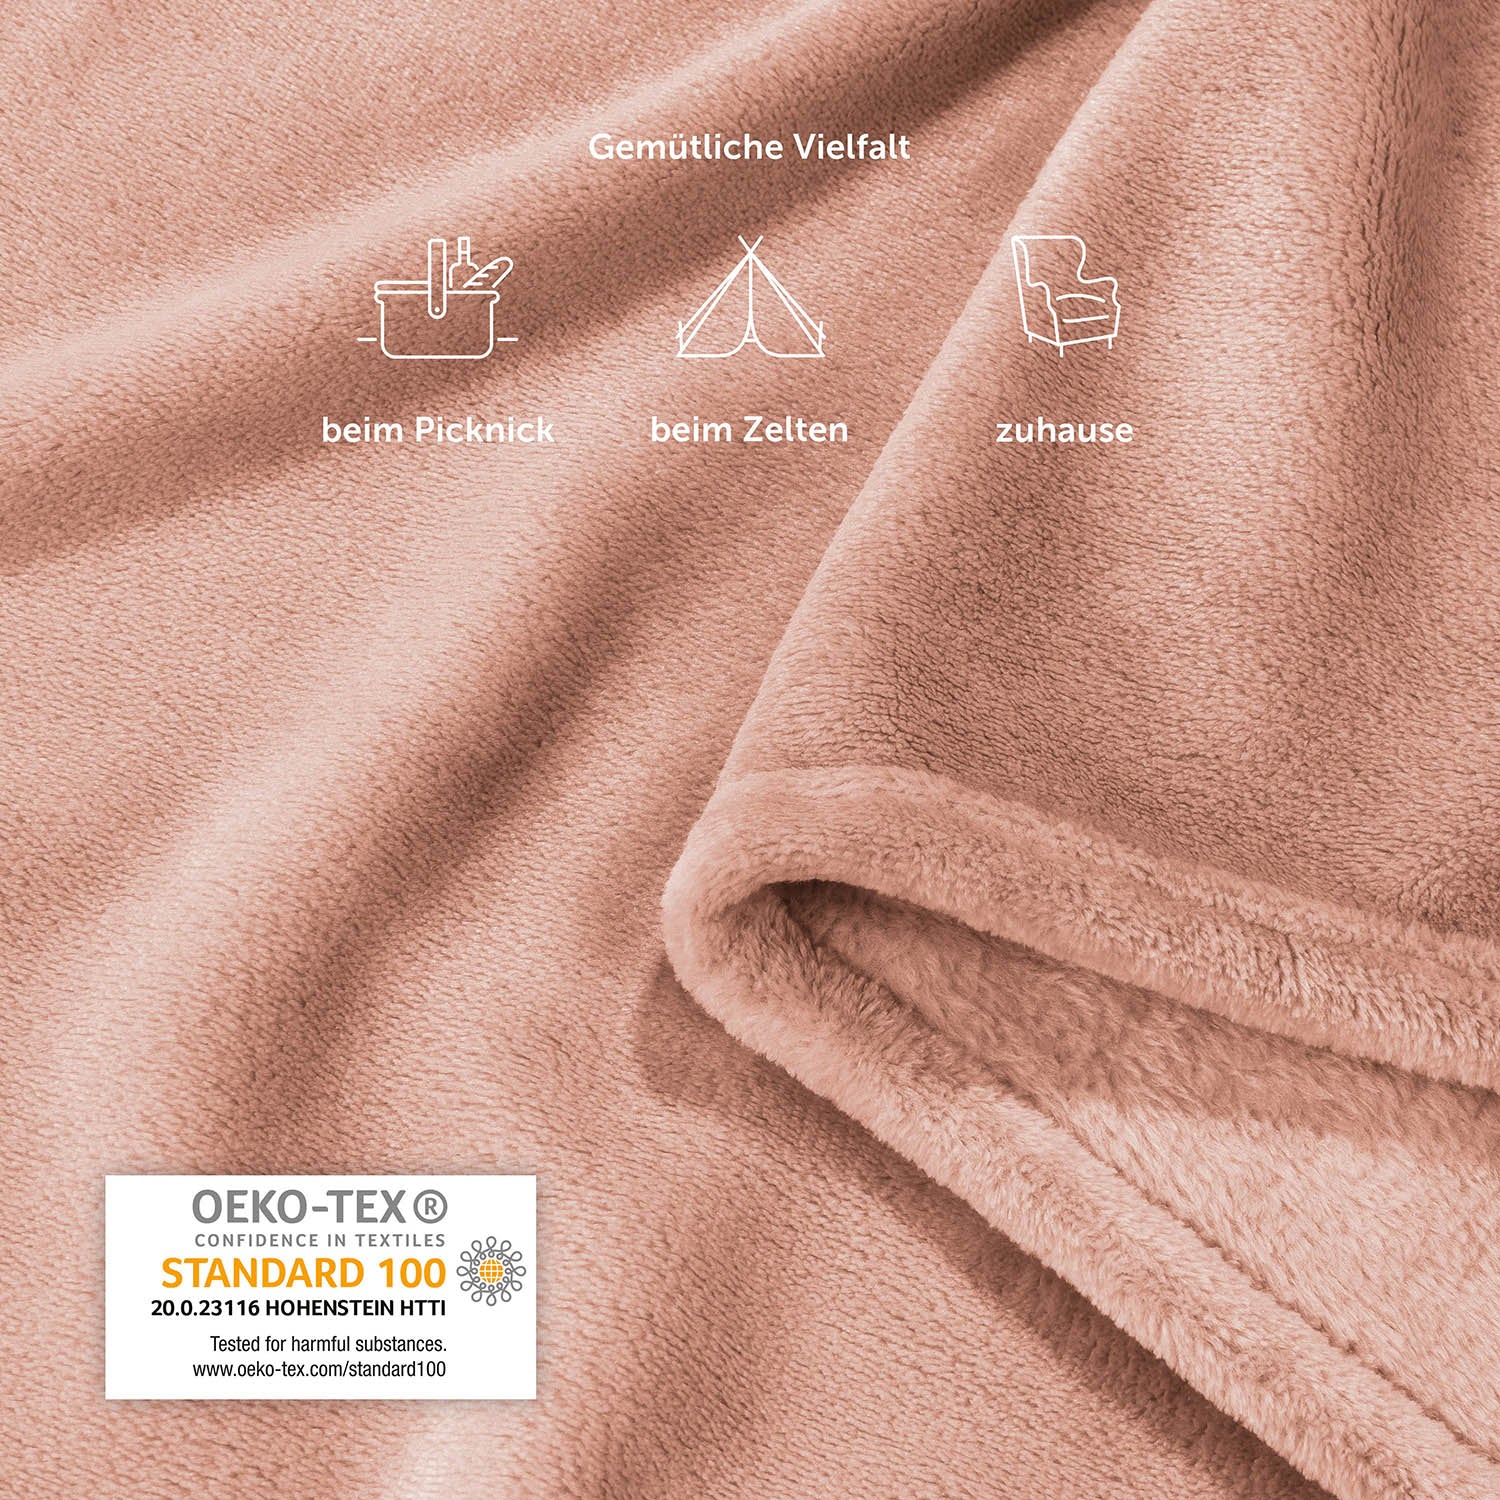 Detailansicht der rosafarbenen Fleece-Kuscheldecke mit Piktogrammen, die vielfältige Einsatzmöglichkeiten wie beim Picknick, Zelten und zu Hause zeigen, inklusive OEKO-TEX Standard 100 Siegel.